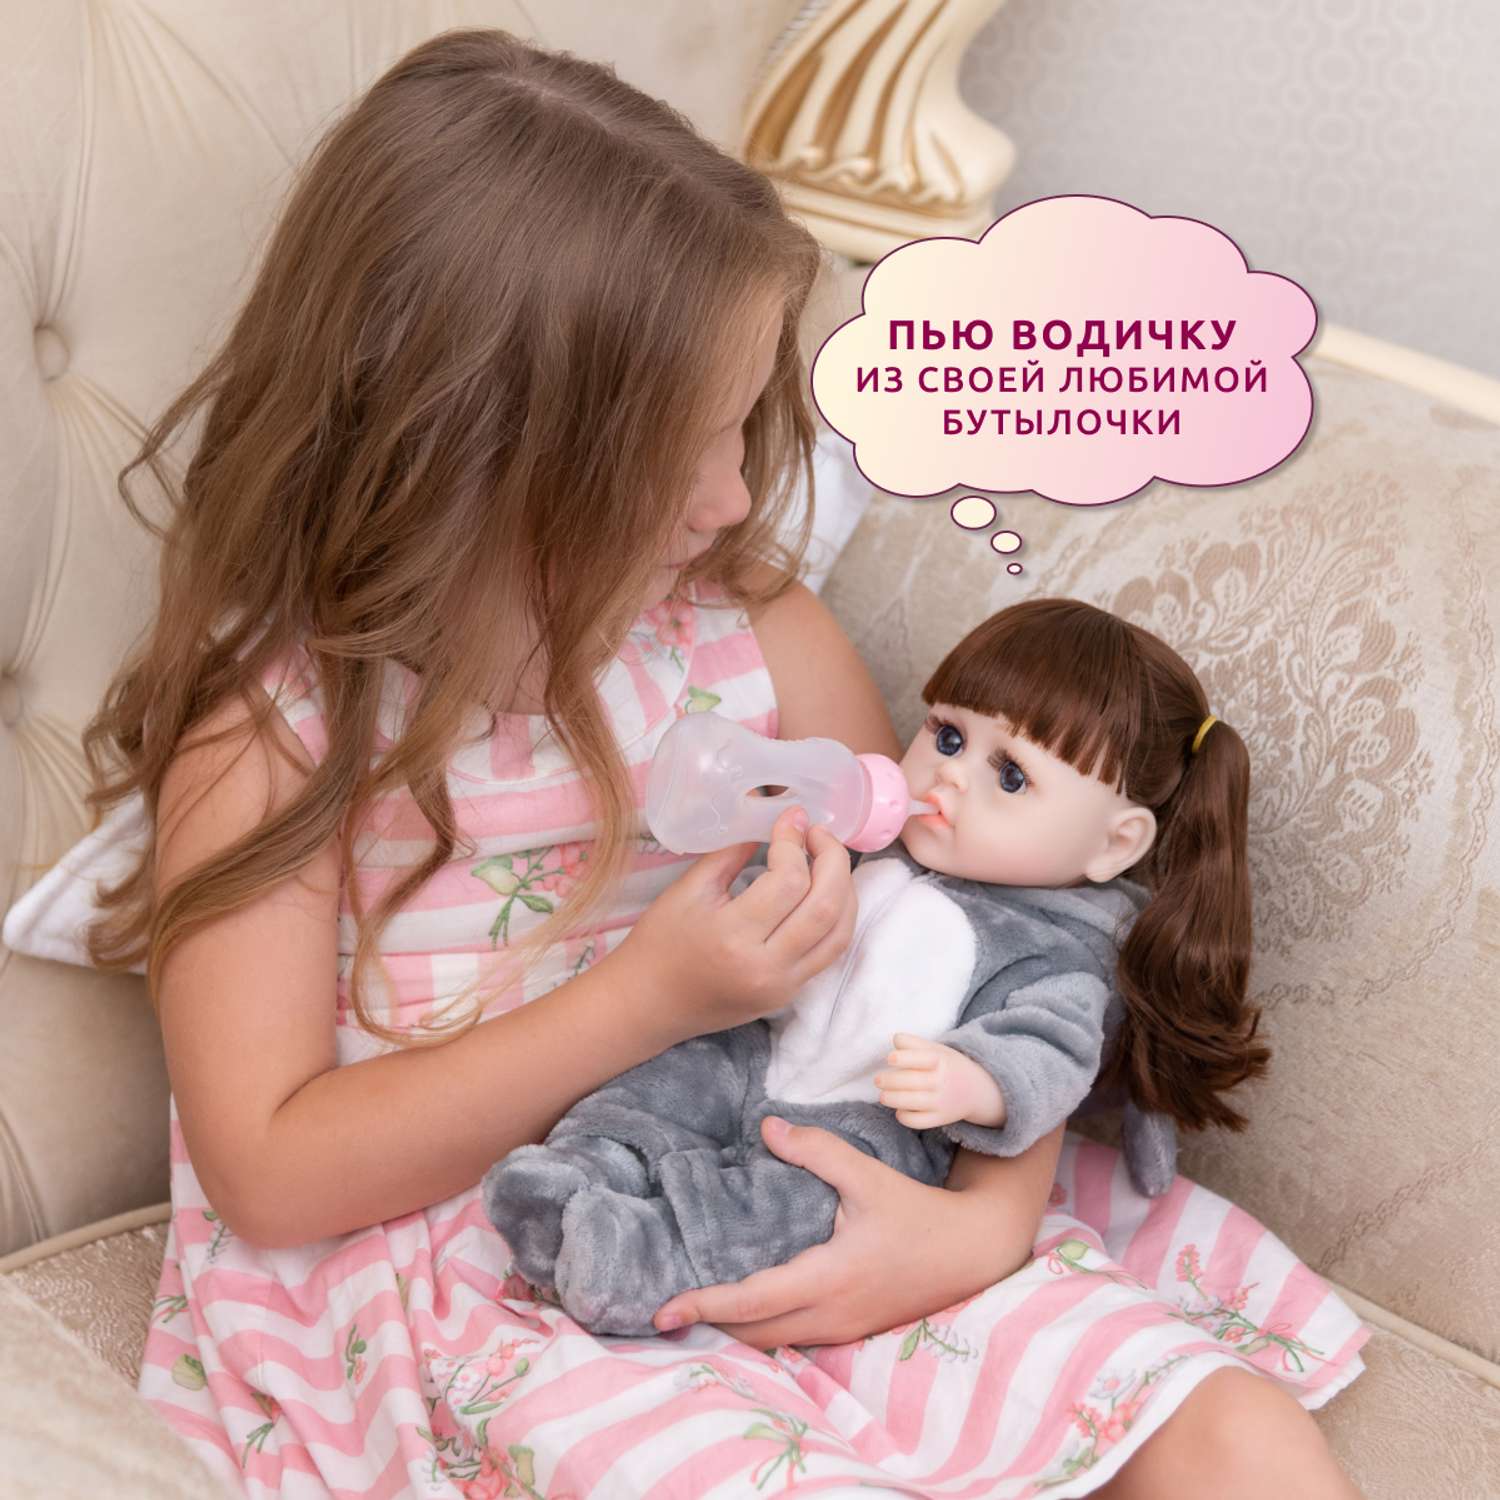 Кукла Реборн QA BABY Мисти девочка интерактивная Пупс набор игрушки для ванной для девочки 38 см 3808 - фото 5